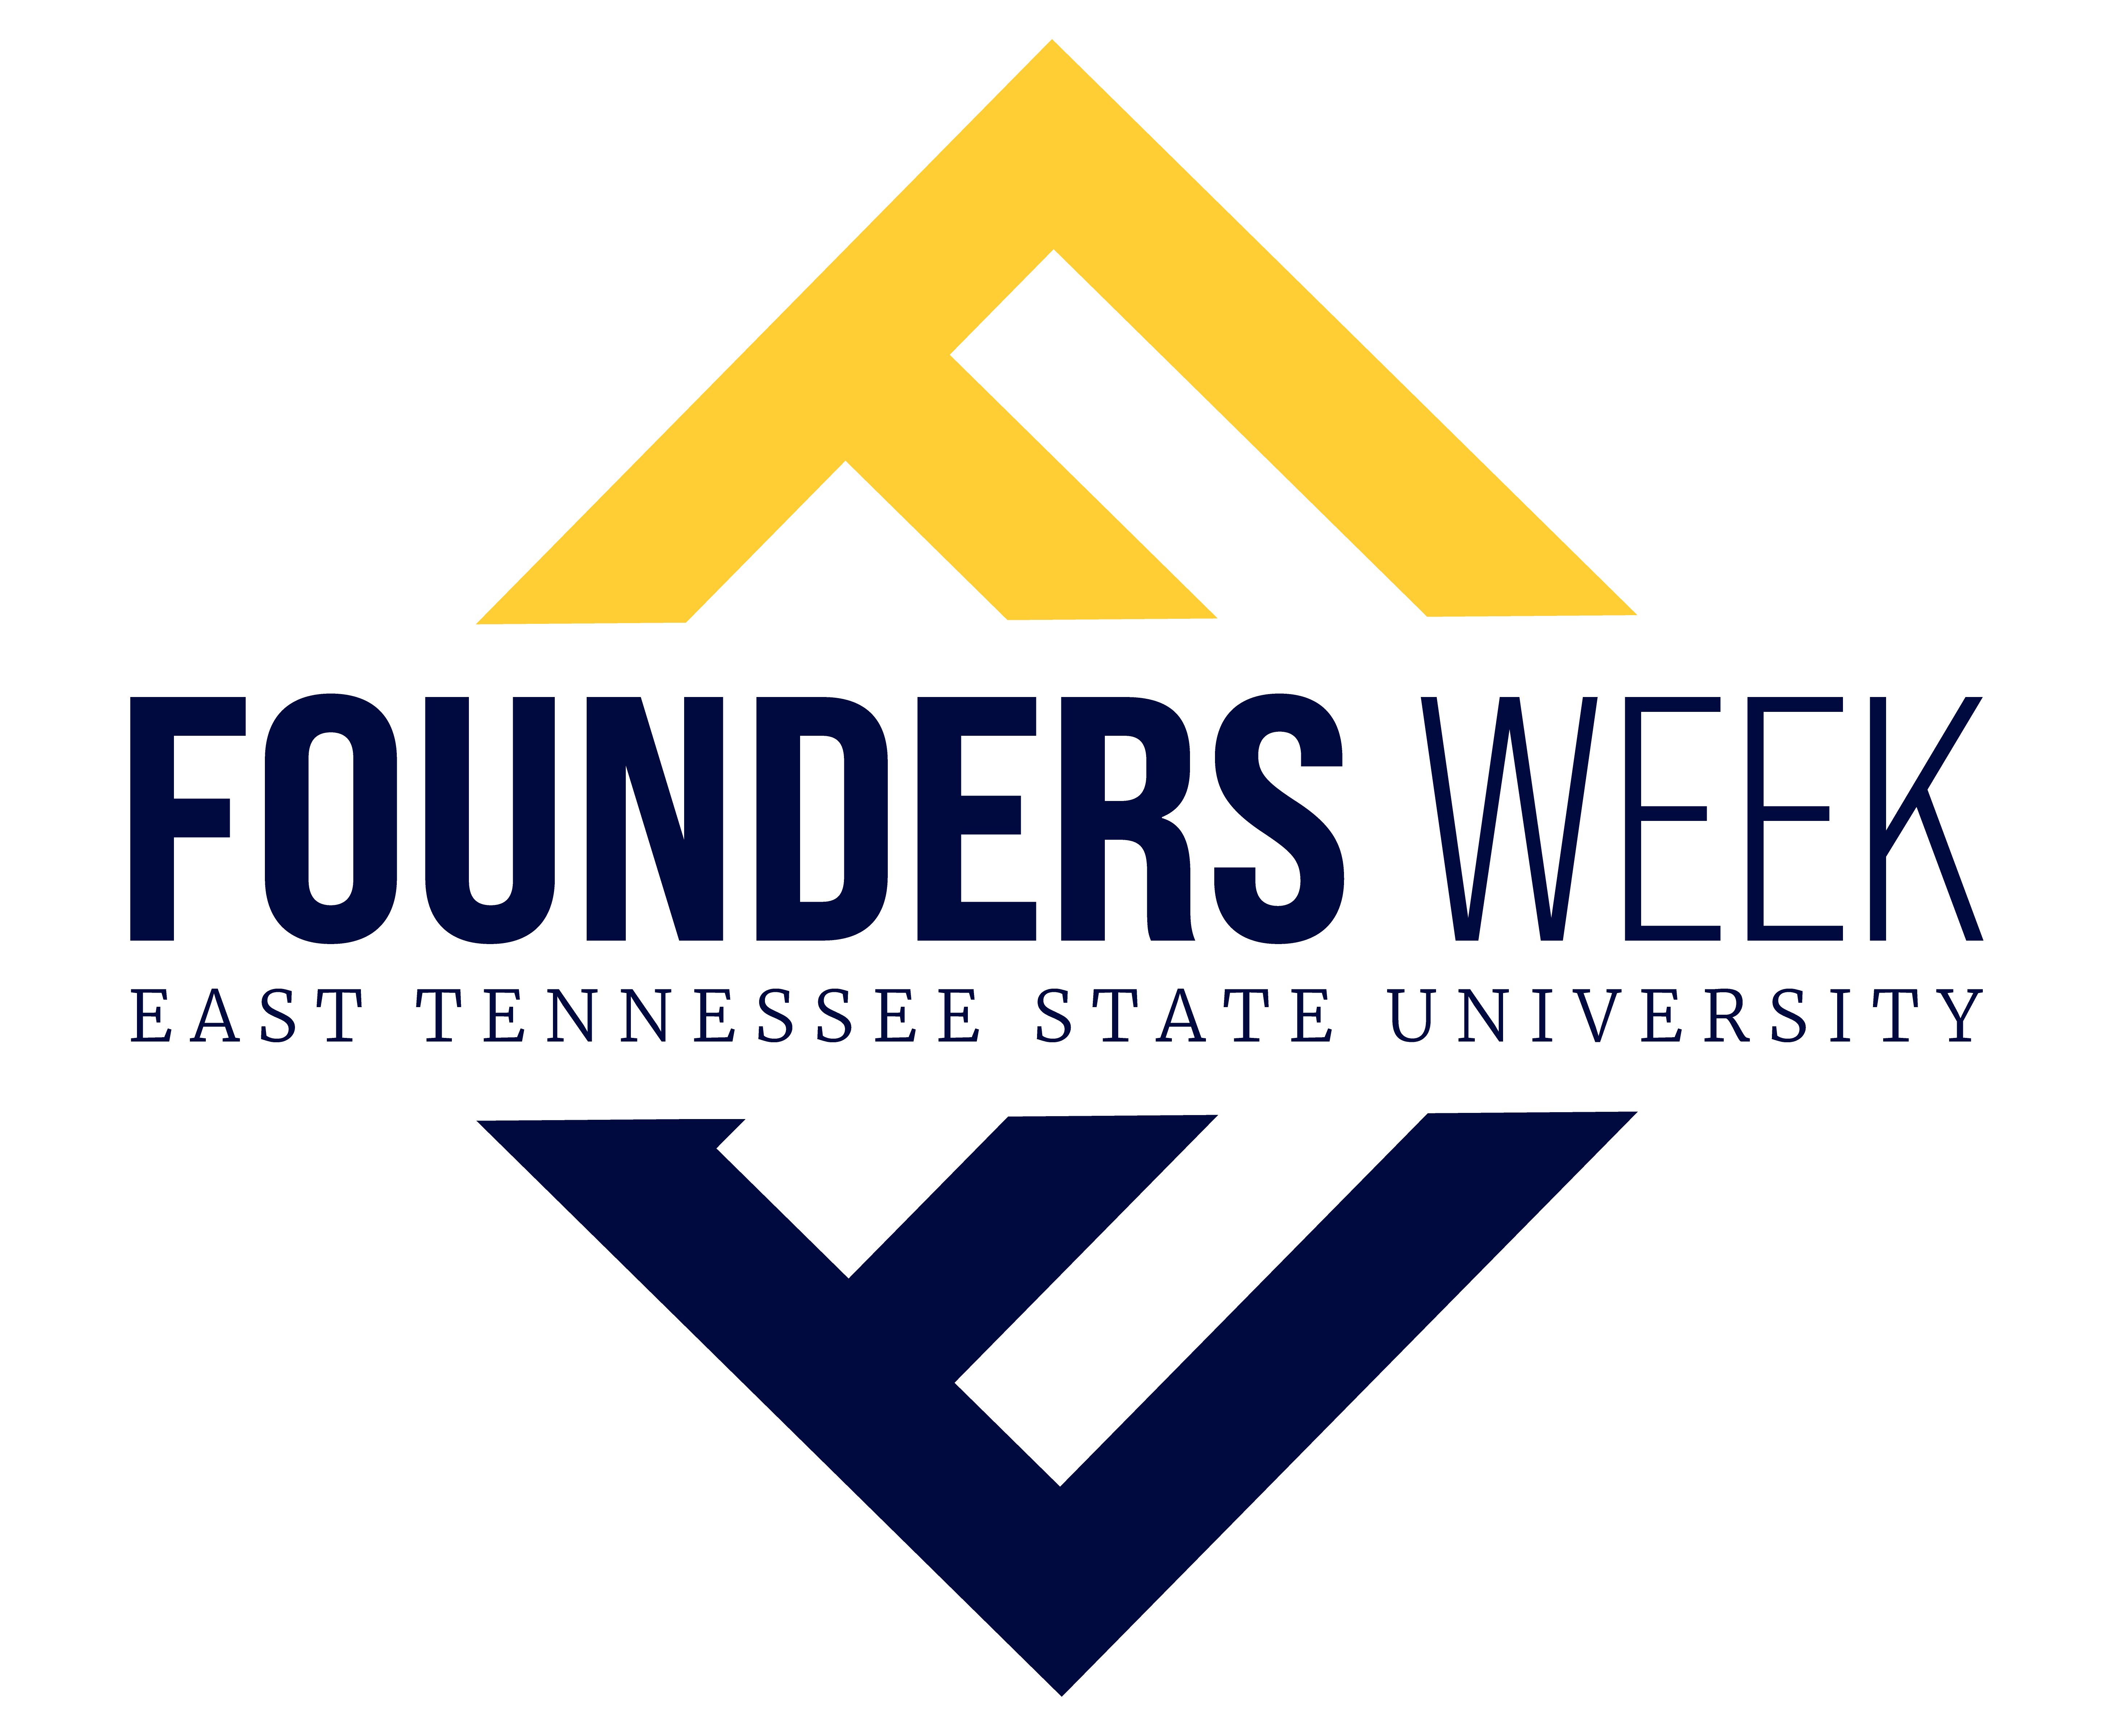 A Founders Week wordmark